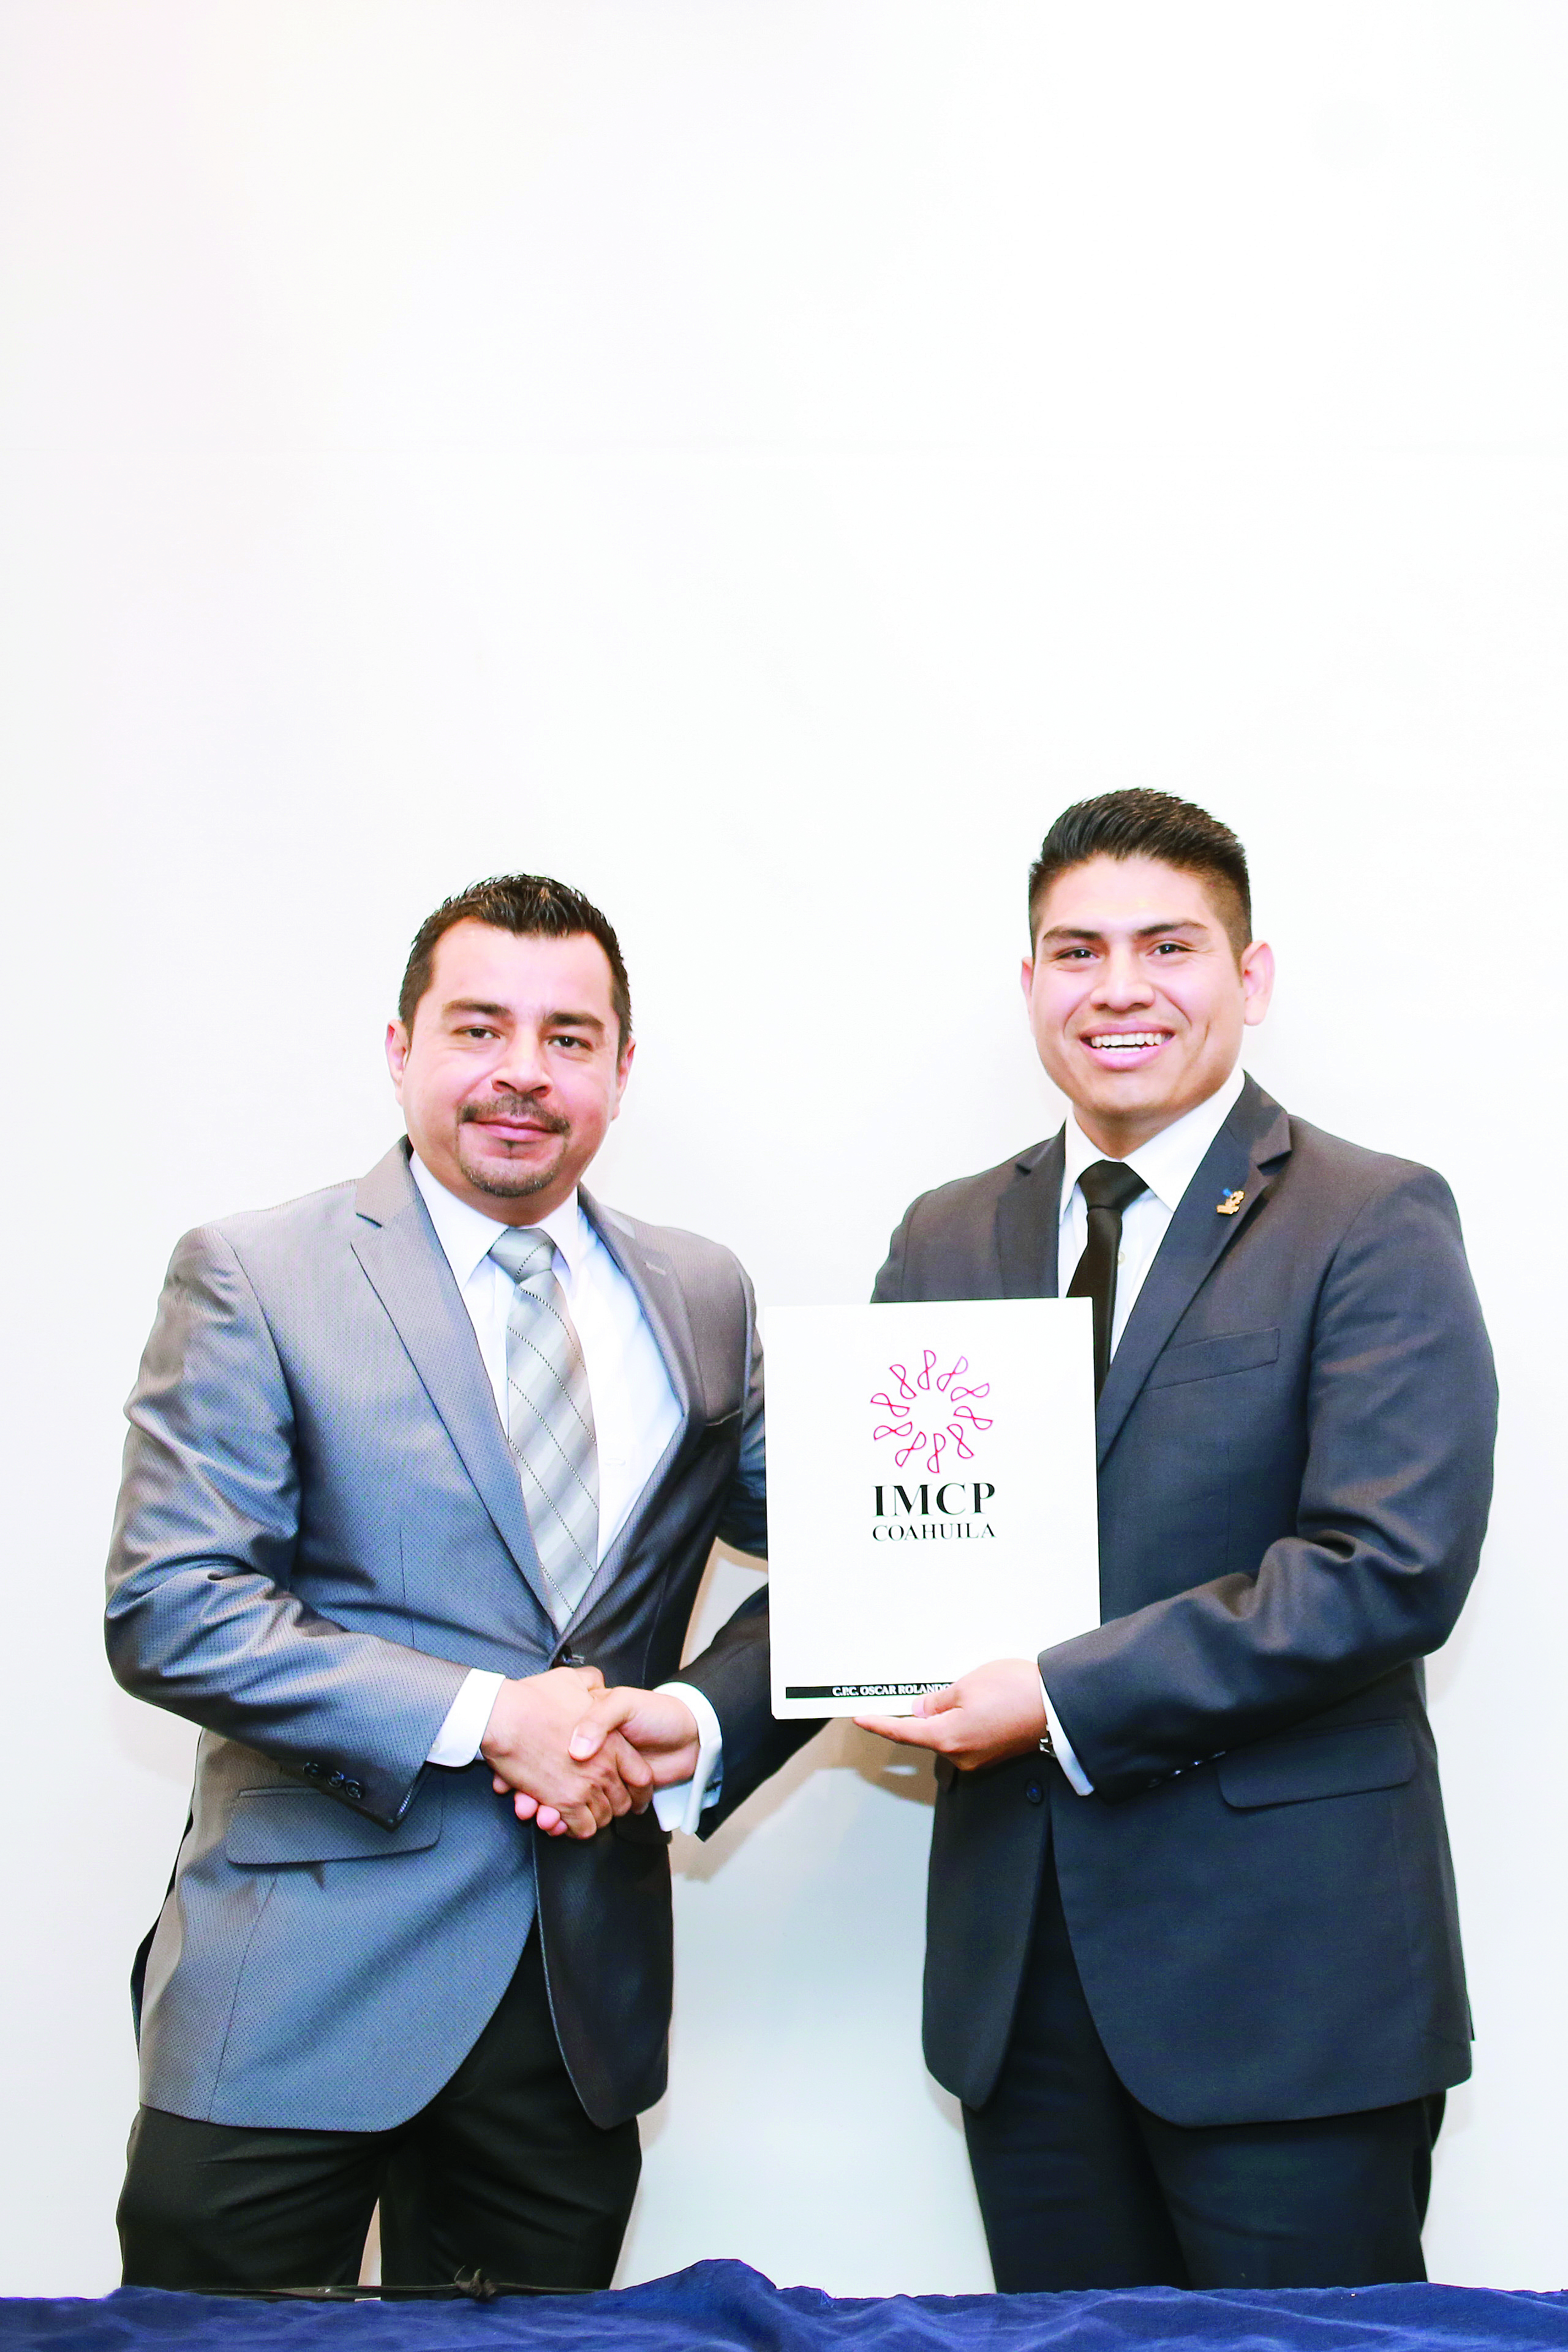 Colegio de Contadores Públicos de Coahuila A.C. Hace entrega de constancias